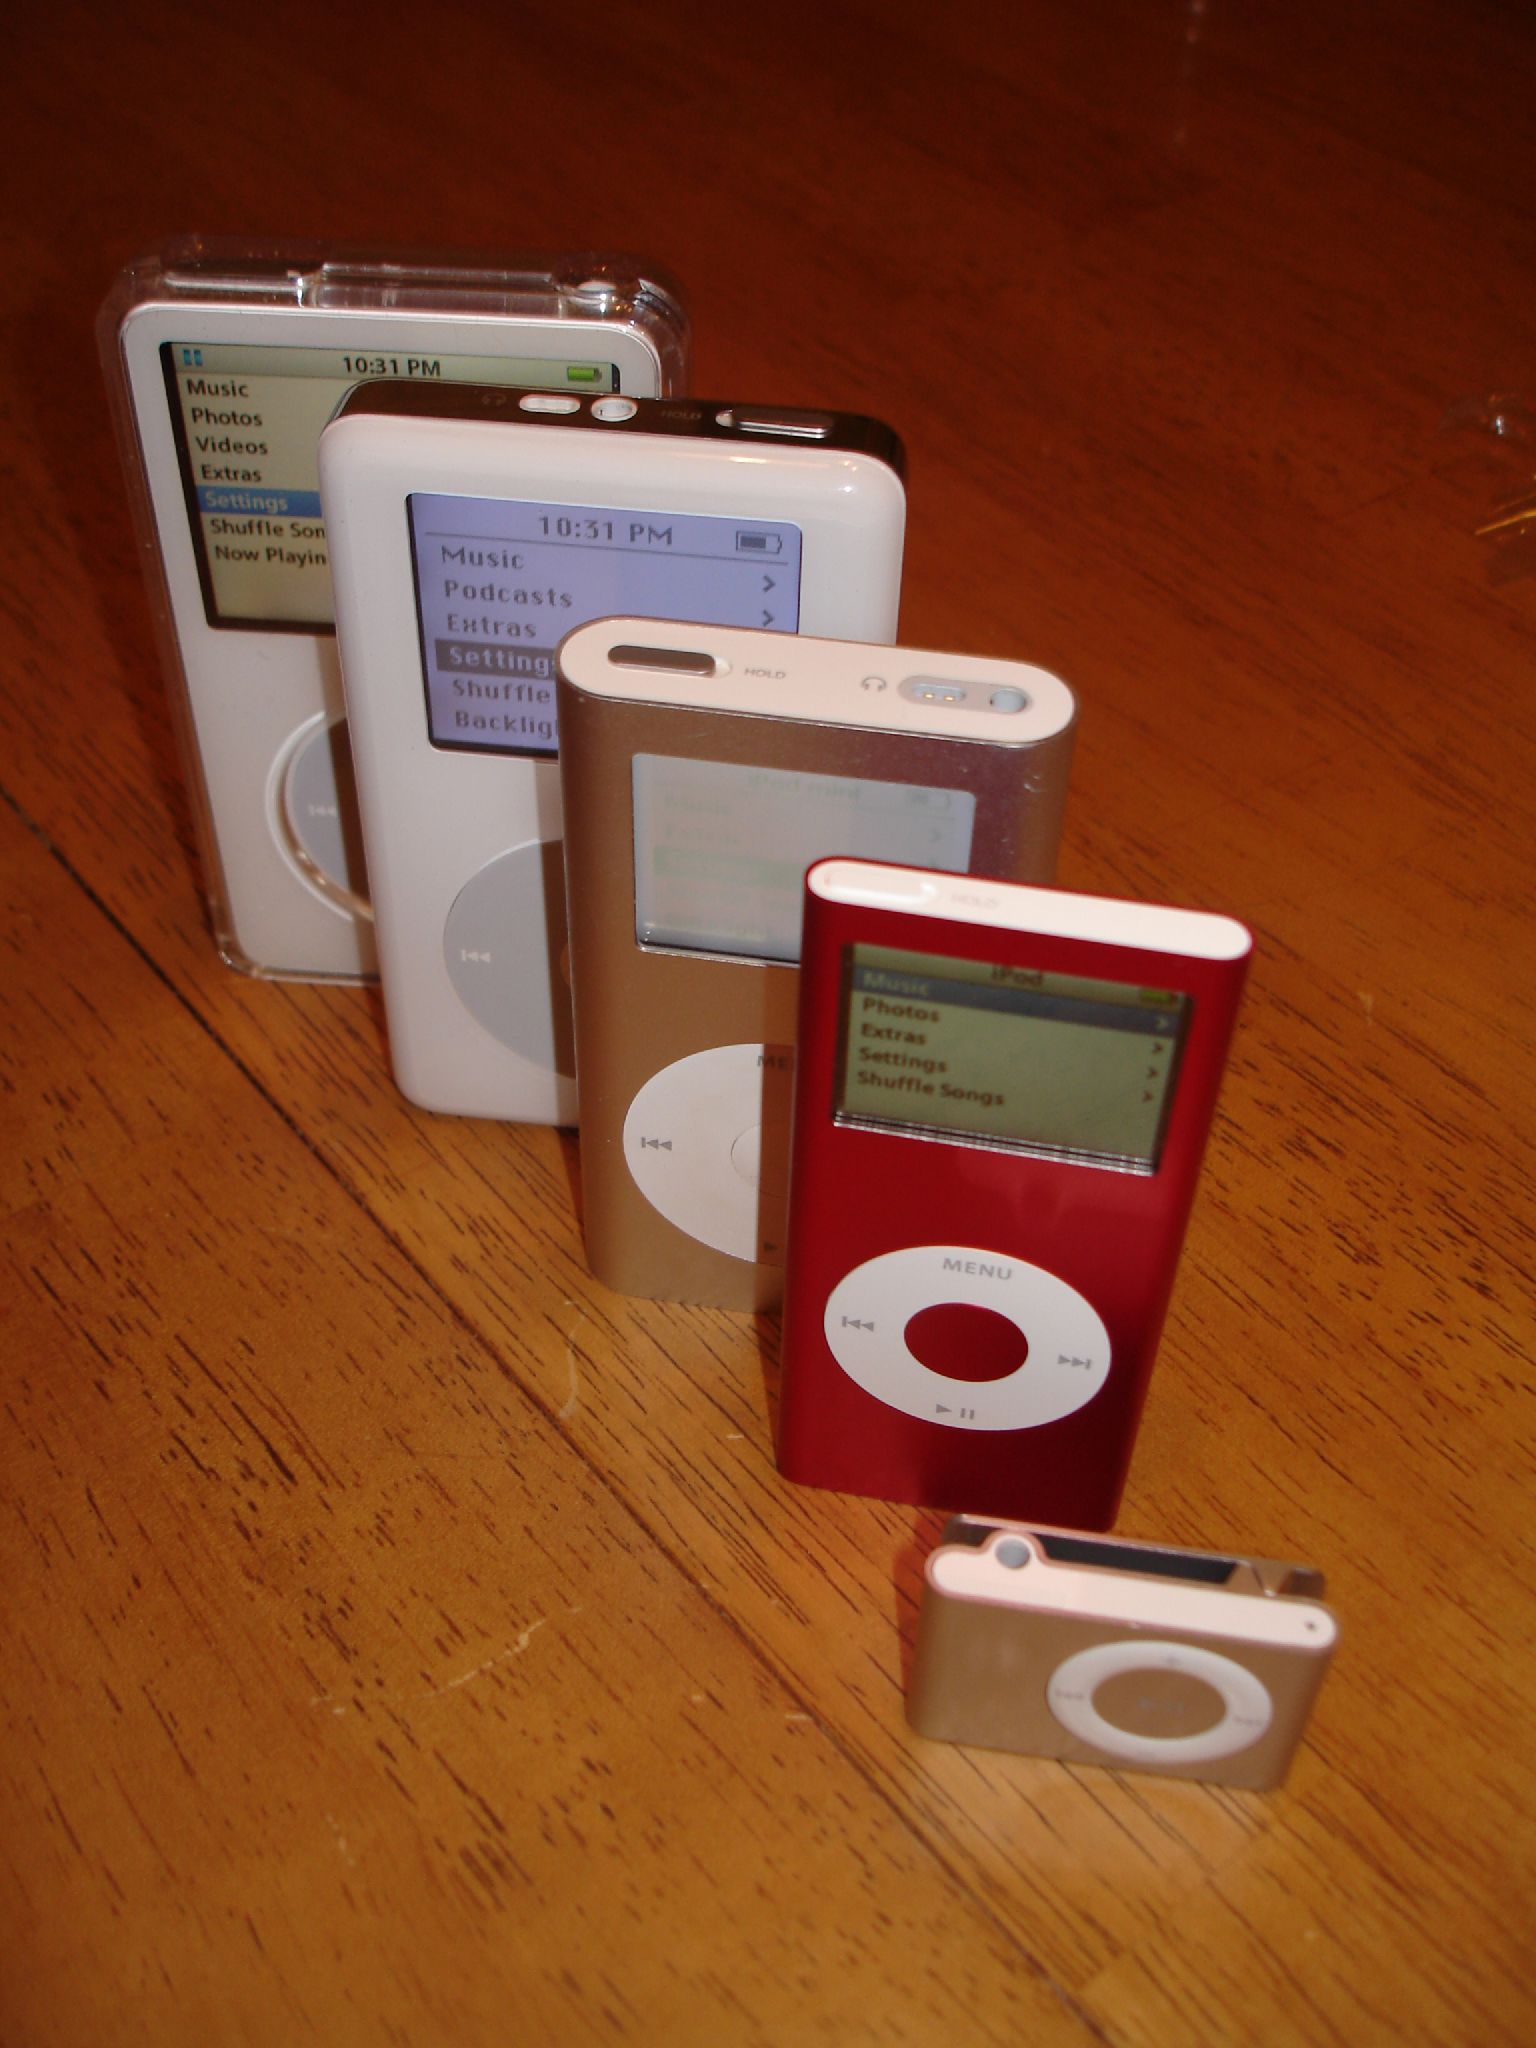 Fichier: Divers iPod.jpg - Wikipédia, l'encyclopédie libre